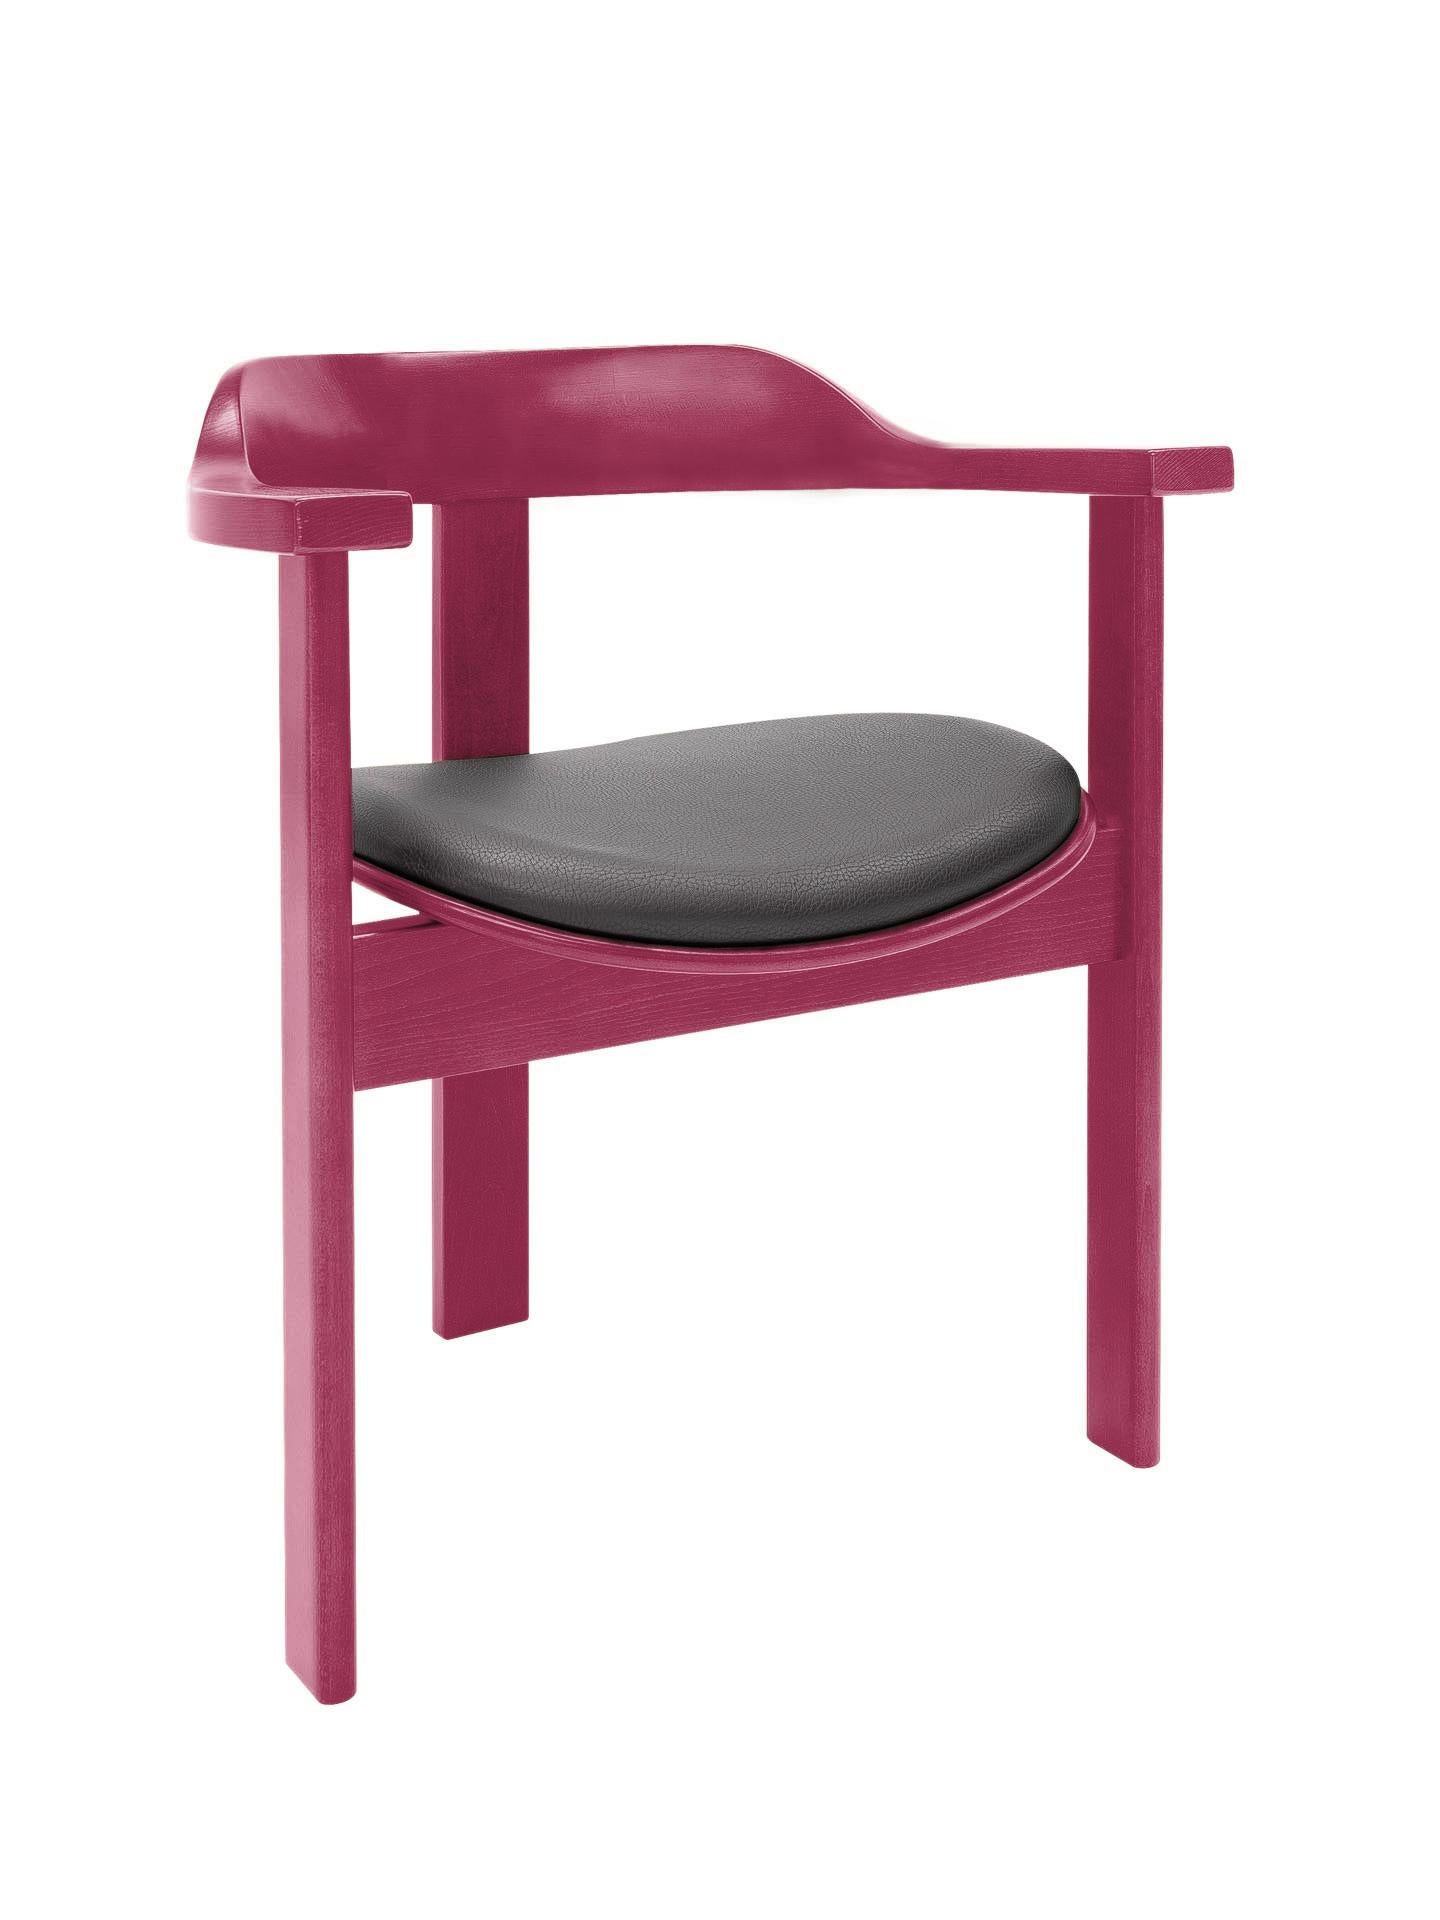 La chaise Haussmann est une pièce intemporelle vibrante de confort et d'élégance.

Cette chaise unique à trois pieds a été présentée pour la première fois à l'